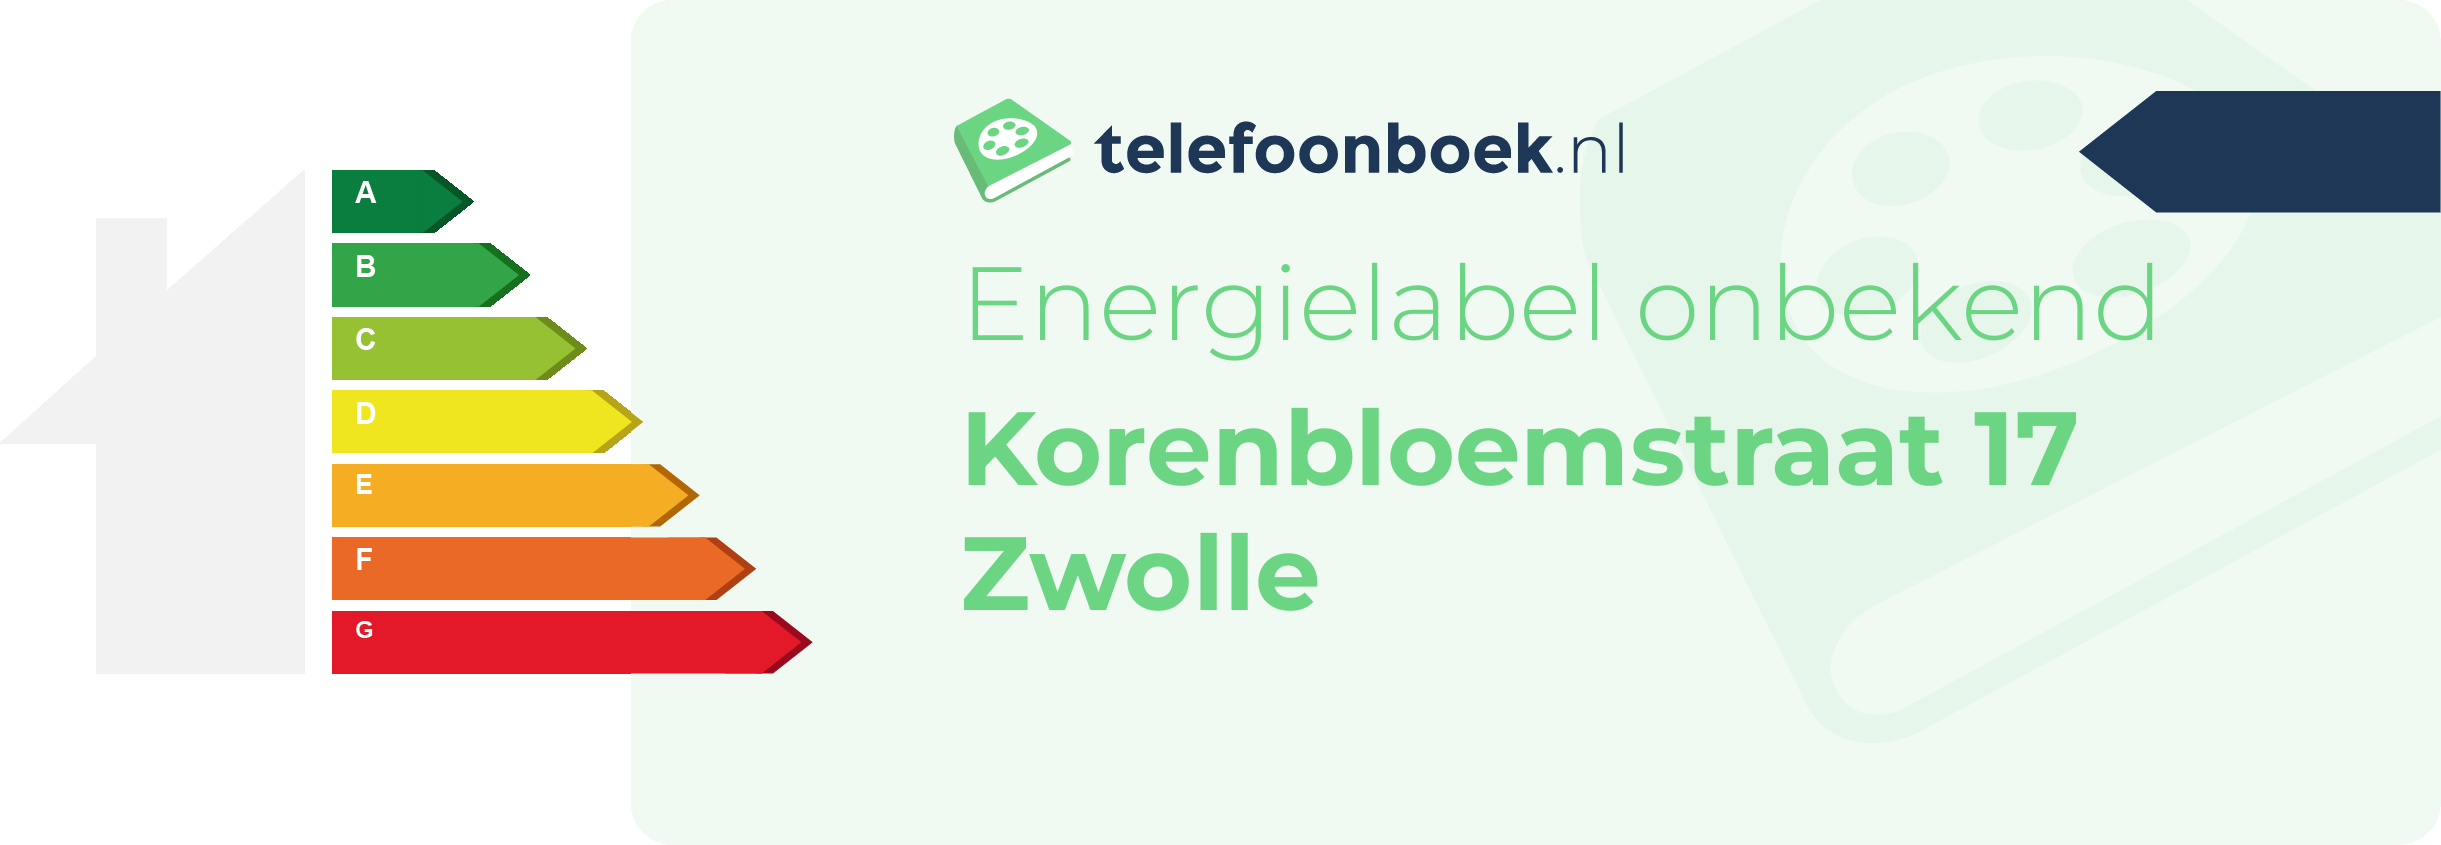 Energielabel Korenbloemstraat 17 Zwolle